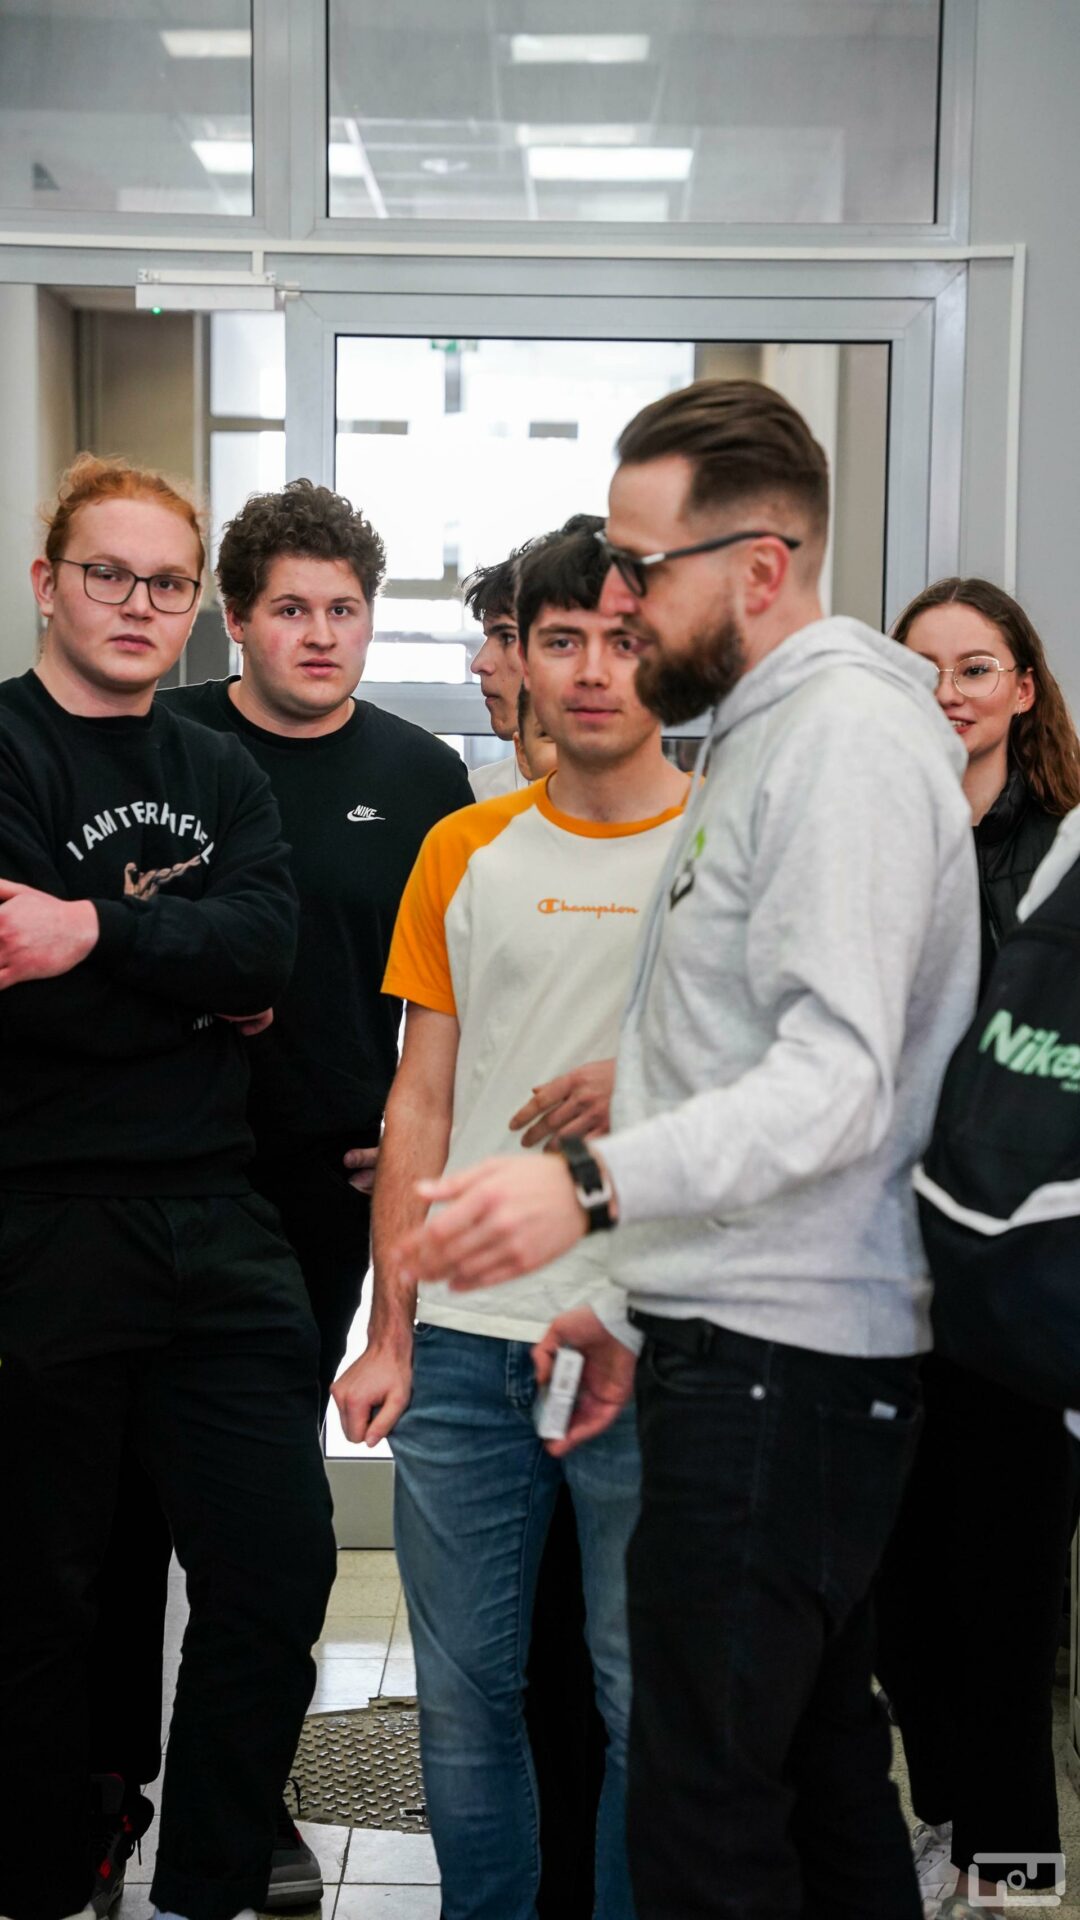 Na zdjęci u widać Michała Twardosza ubranego w szarą bluzę wydziałową który rozmawia z uczniami liceów i techników.